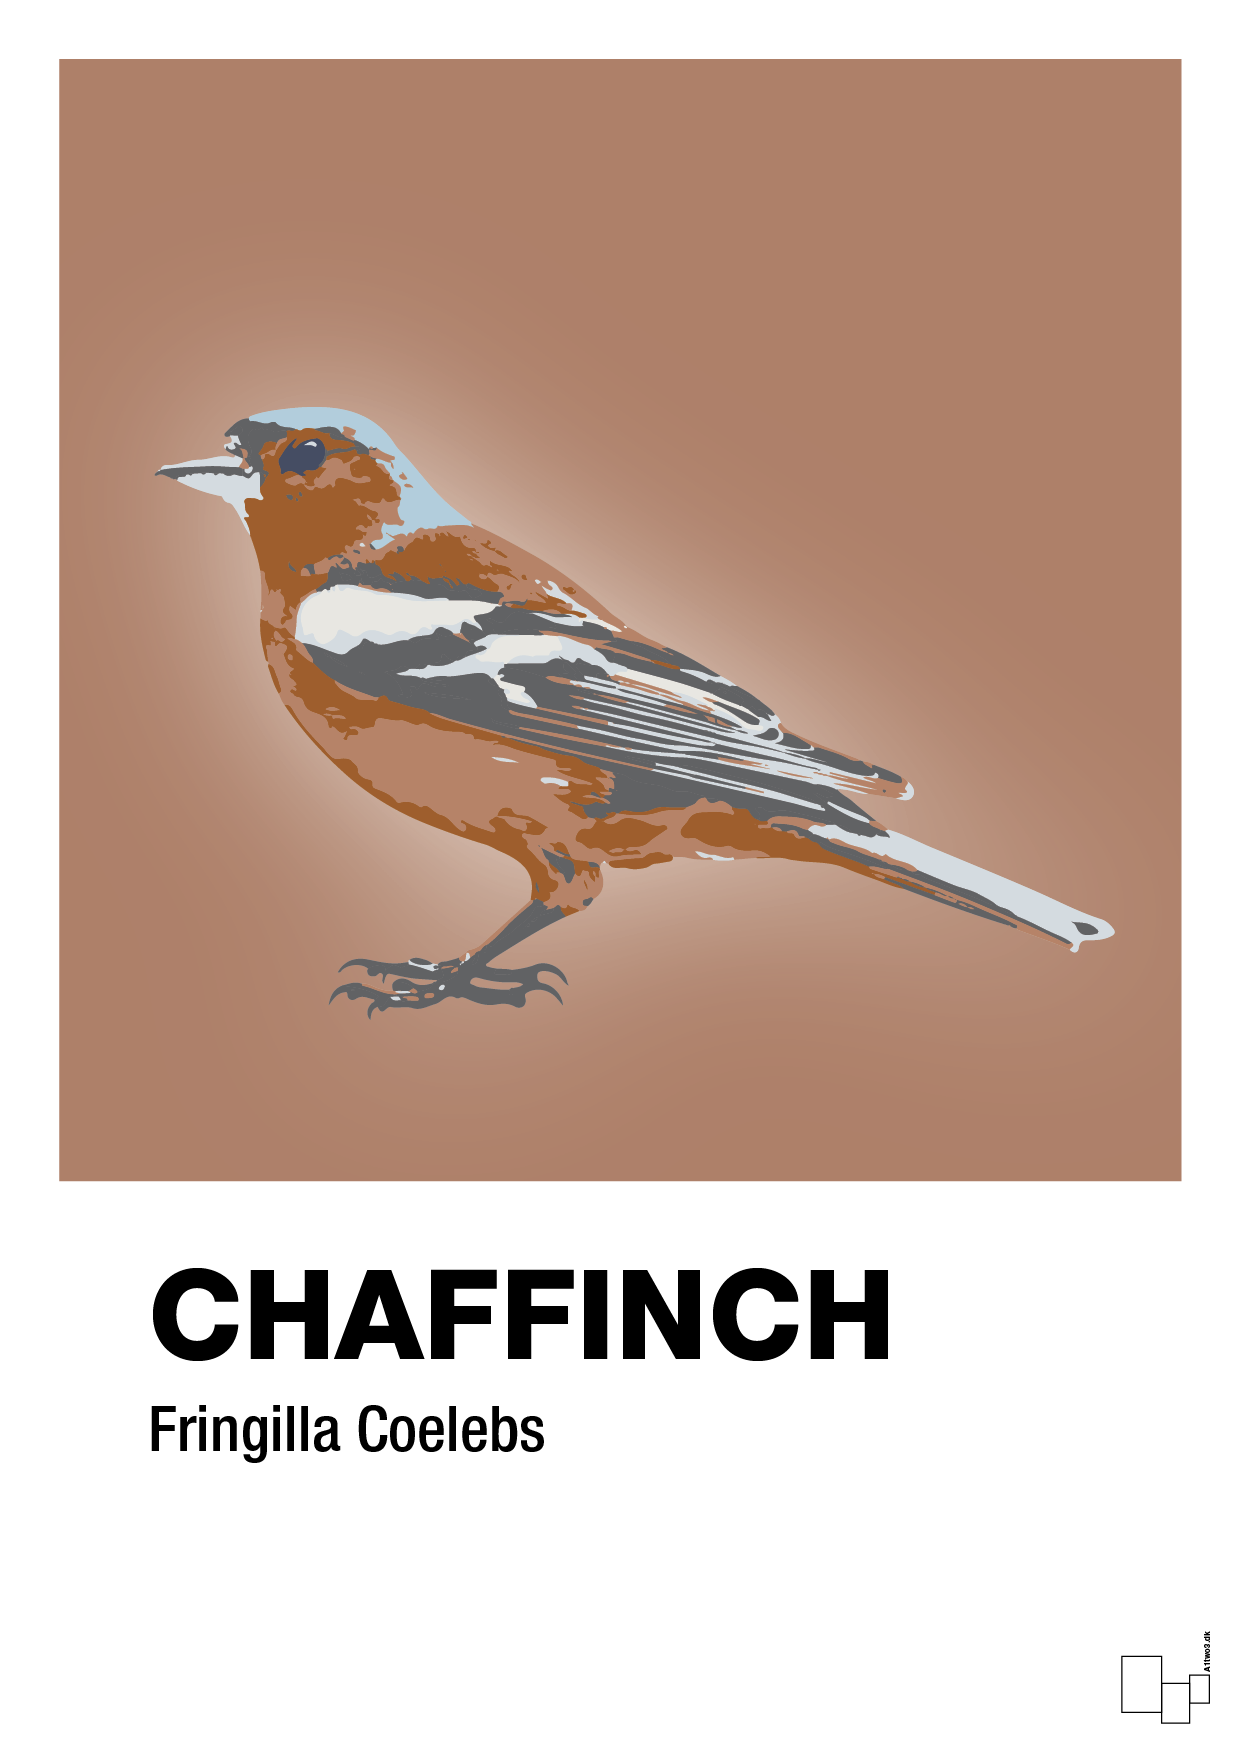 chaffinch - Plakat med Videnskab i Cider Spice